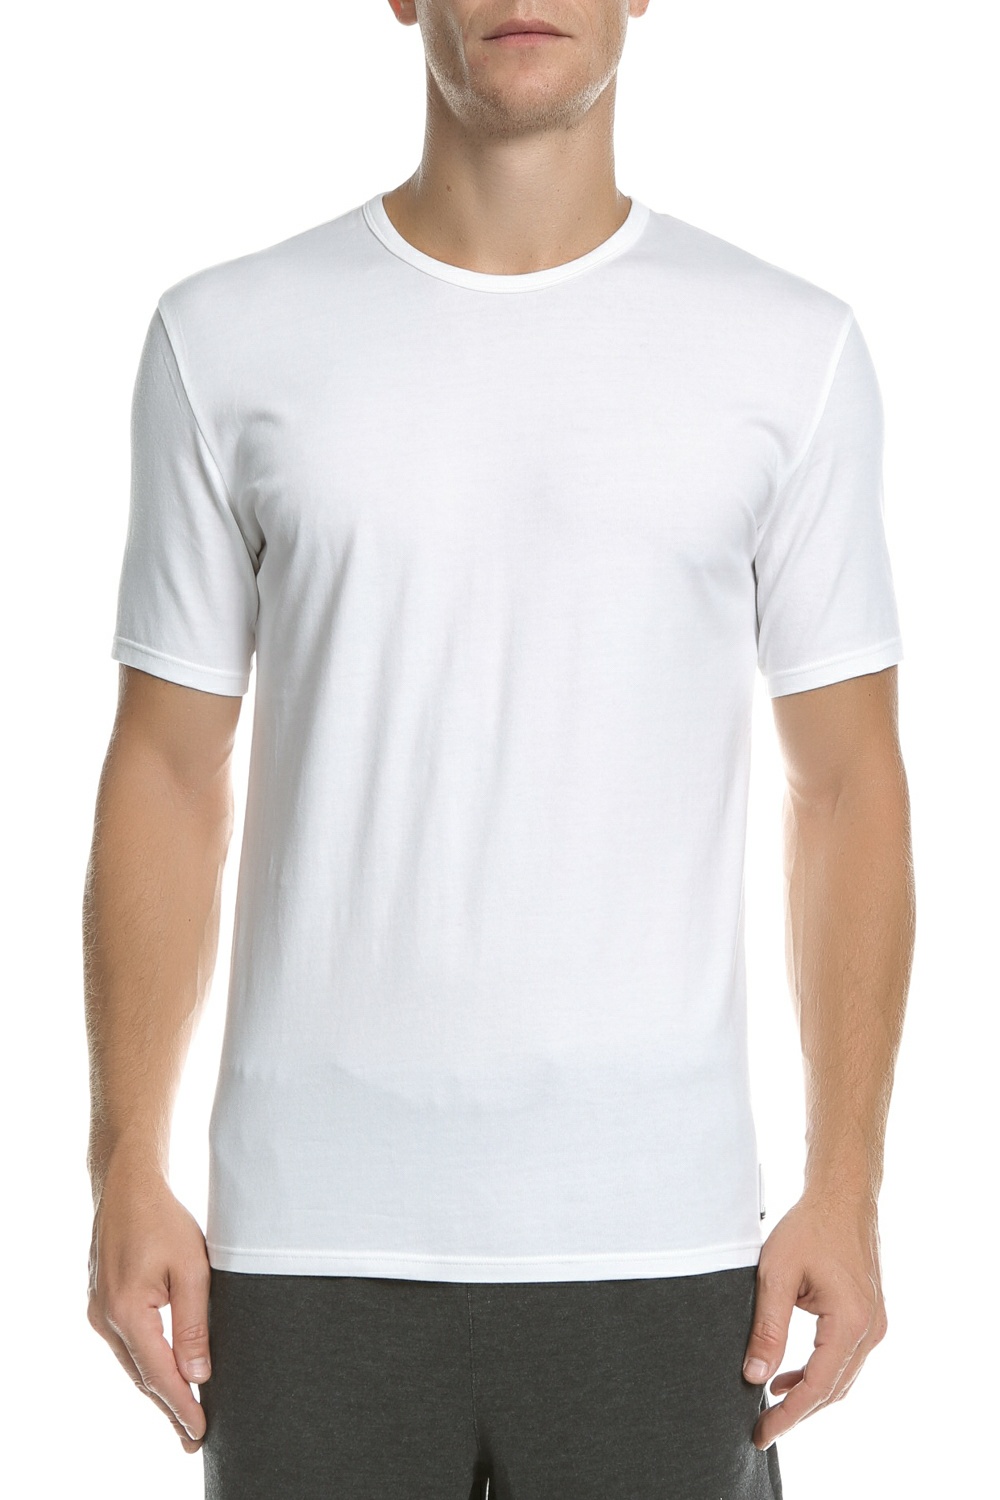 Ανδρικά/Ρούχα/Μπλούζες/Κοντομάνικες CK UNDERWEAR - Ανδρικό T-shirt CK UNDERWEAR λευκό